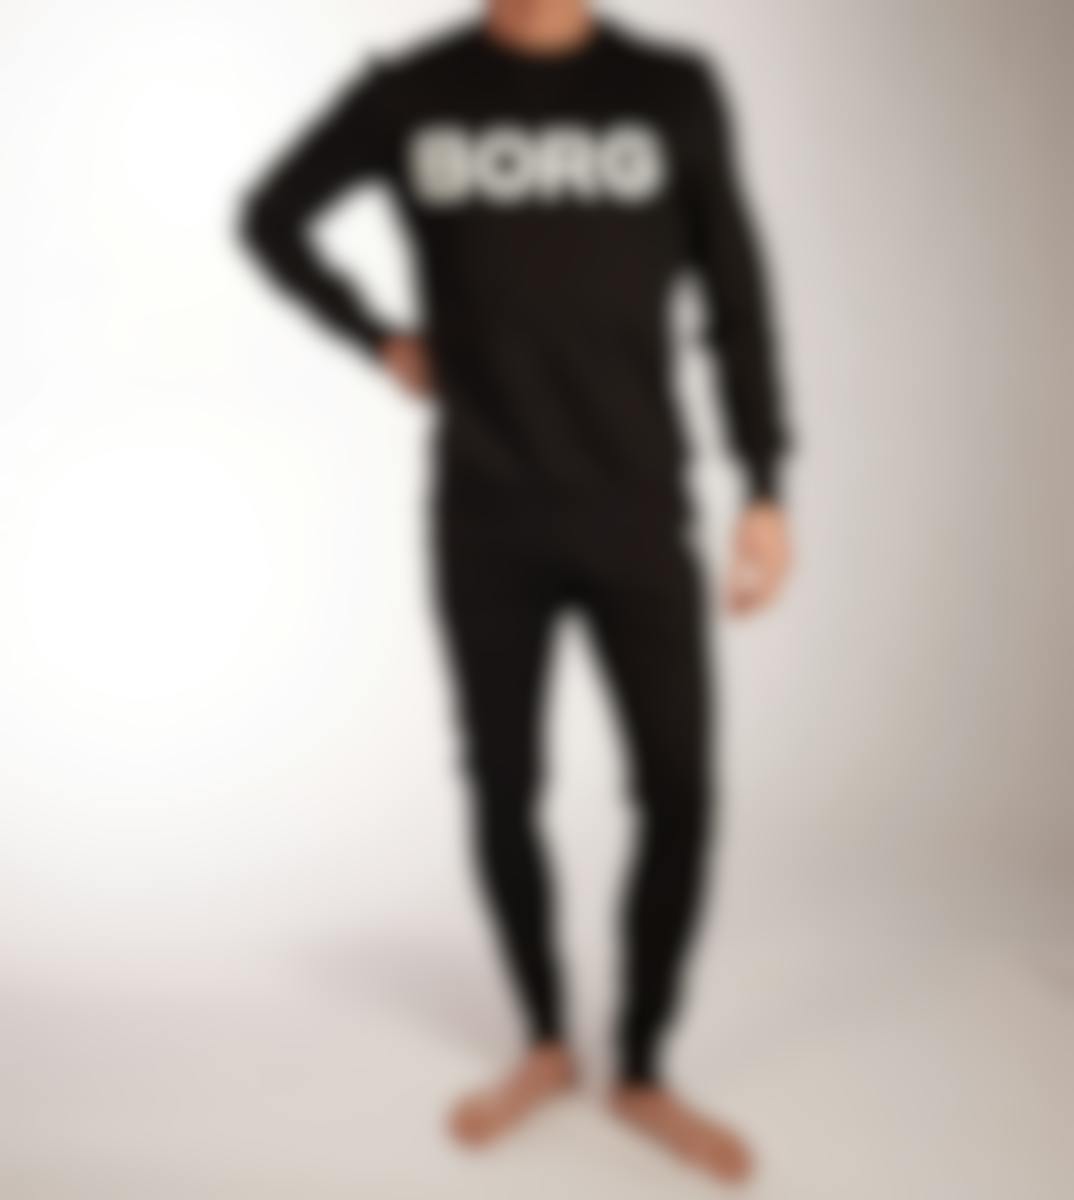 Bjorn Borg homewear top Sportswear Crew Logo H